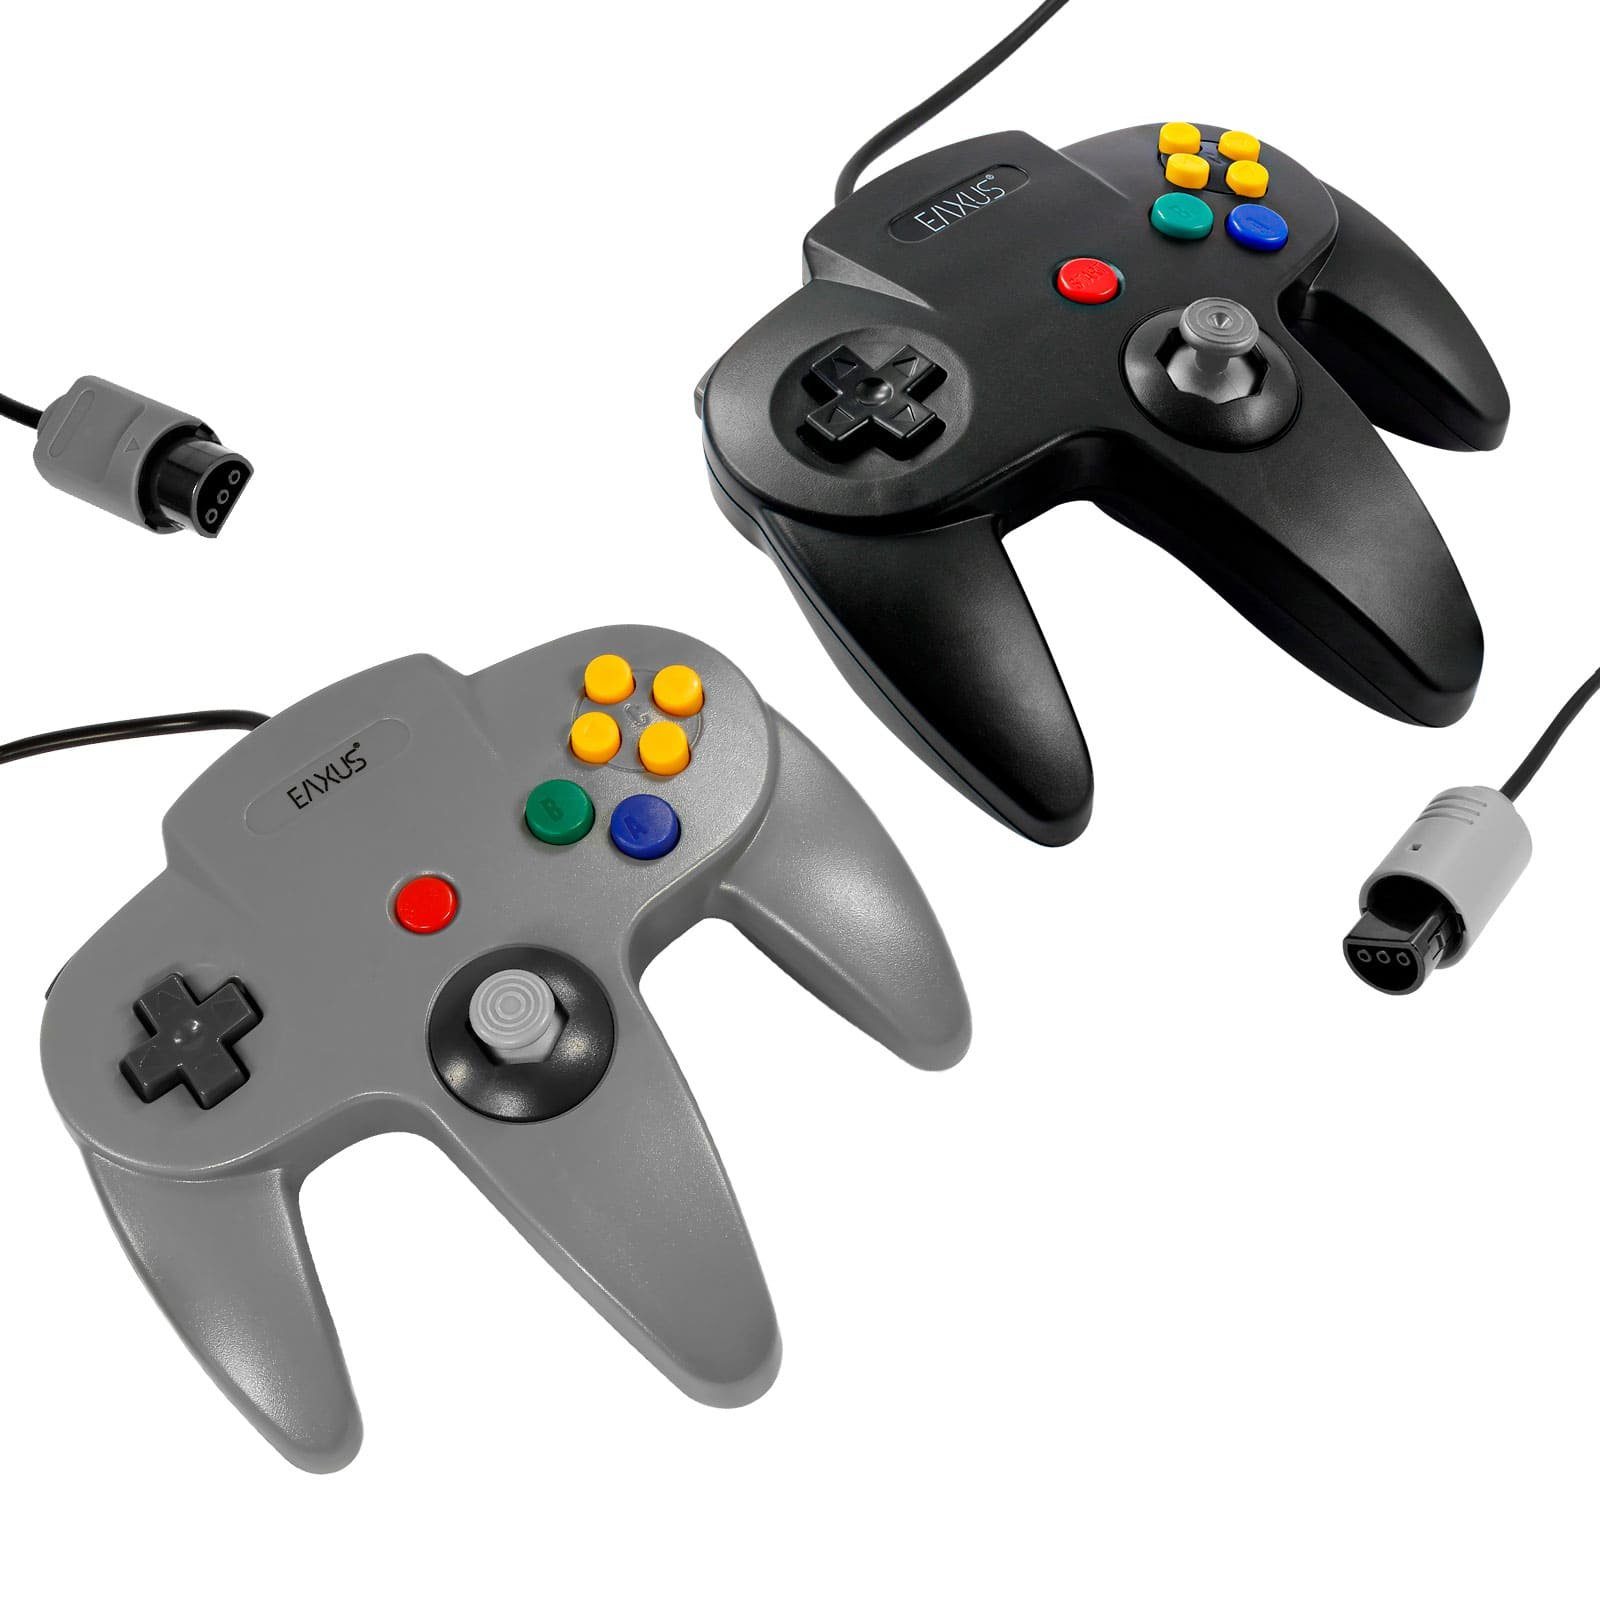 EAXUS Gamepad für Nintendo 64 (1 N64) für Controller in Grau St., 1x Schwarz/Grau 1x Schwarz